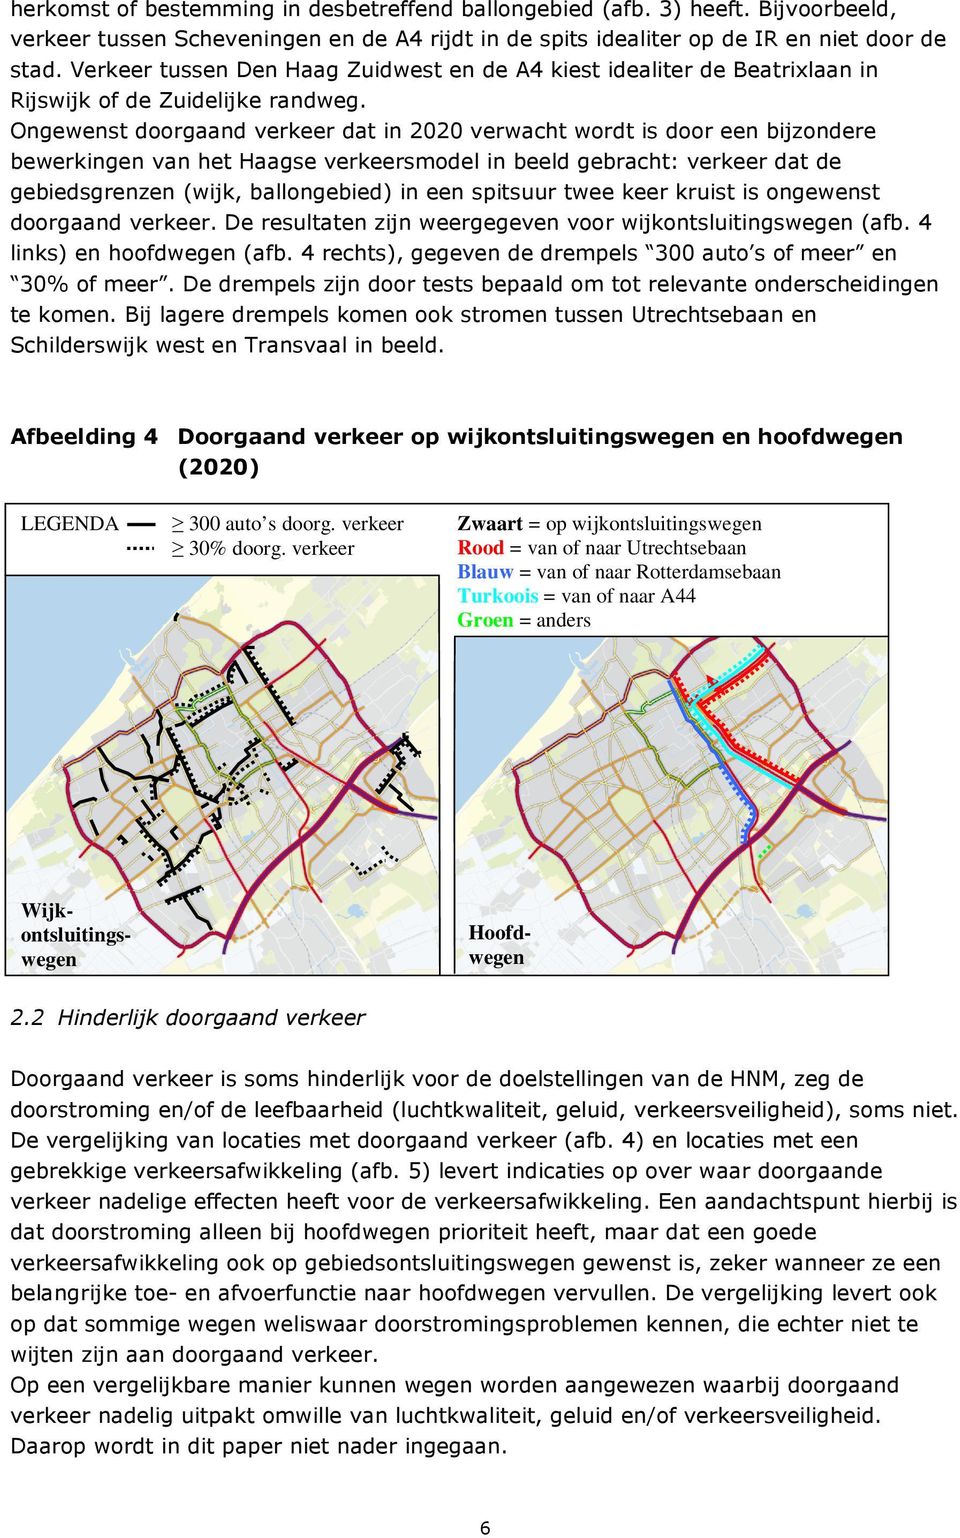 Ongewenst doorgaand verkeer dat in 2020 verwacht wordt is door een bijzondere bewerkingen van het Haagse verkeersmodel in beeld gebracht: verkeer dat de gebiedsgrenzen (wijk, ballongebied) in een